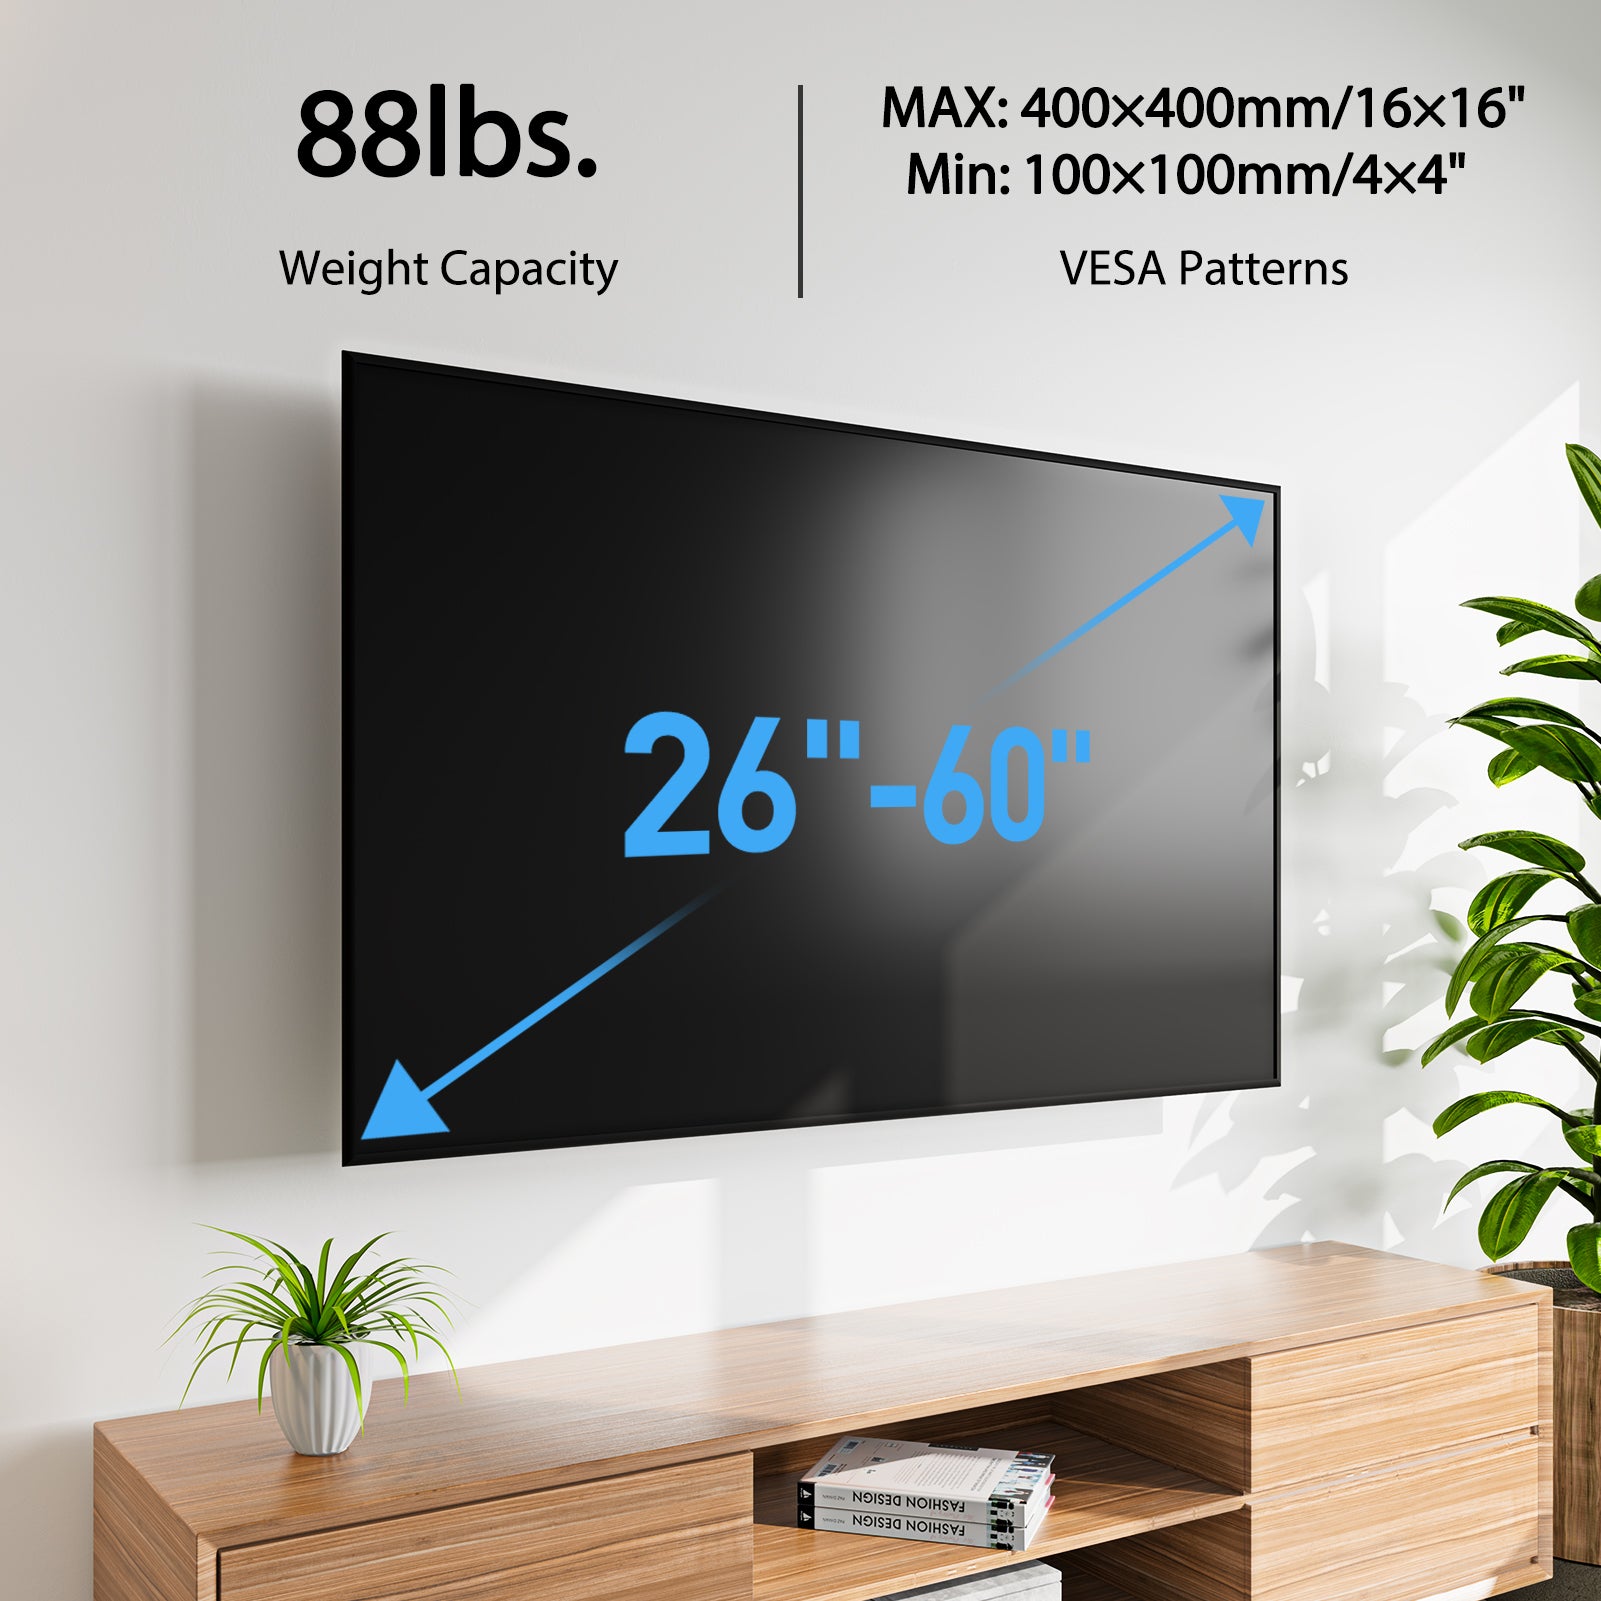 Full Motion TV Wall Mount For 26"-60" TVs MUT0020